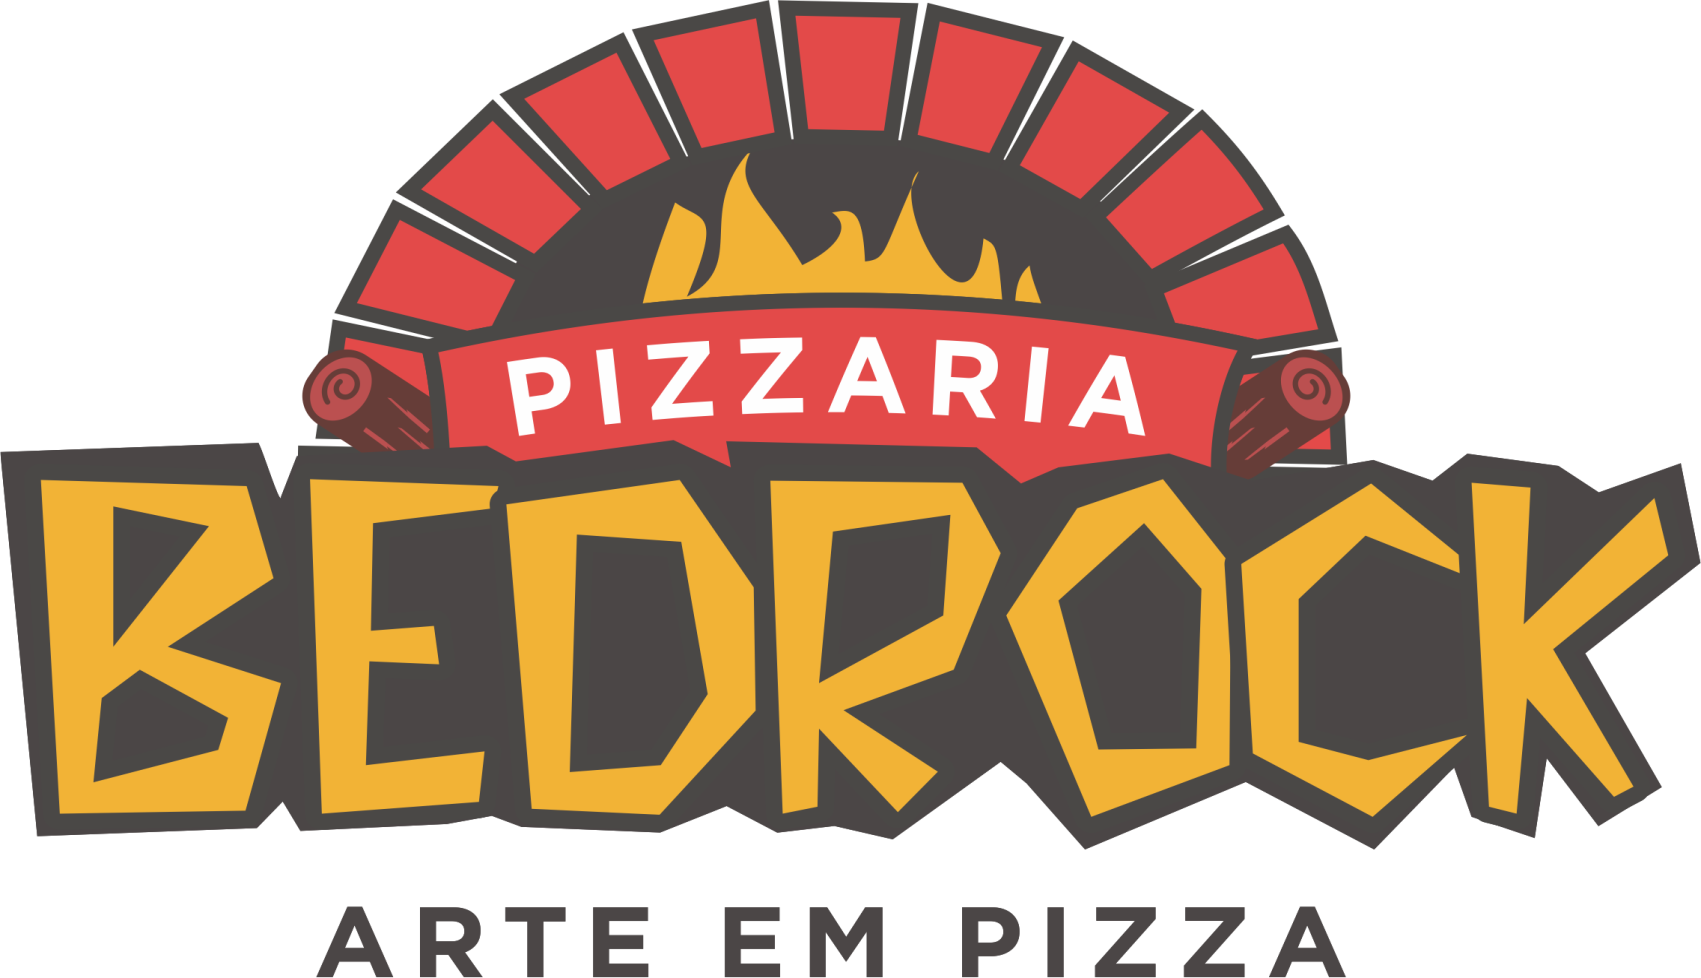 Pizzaria Bedrock